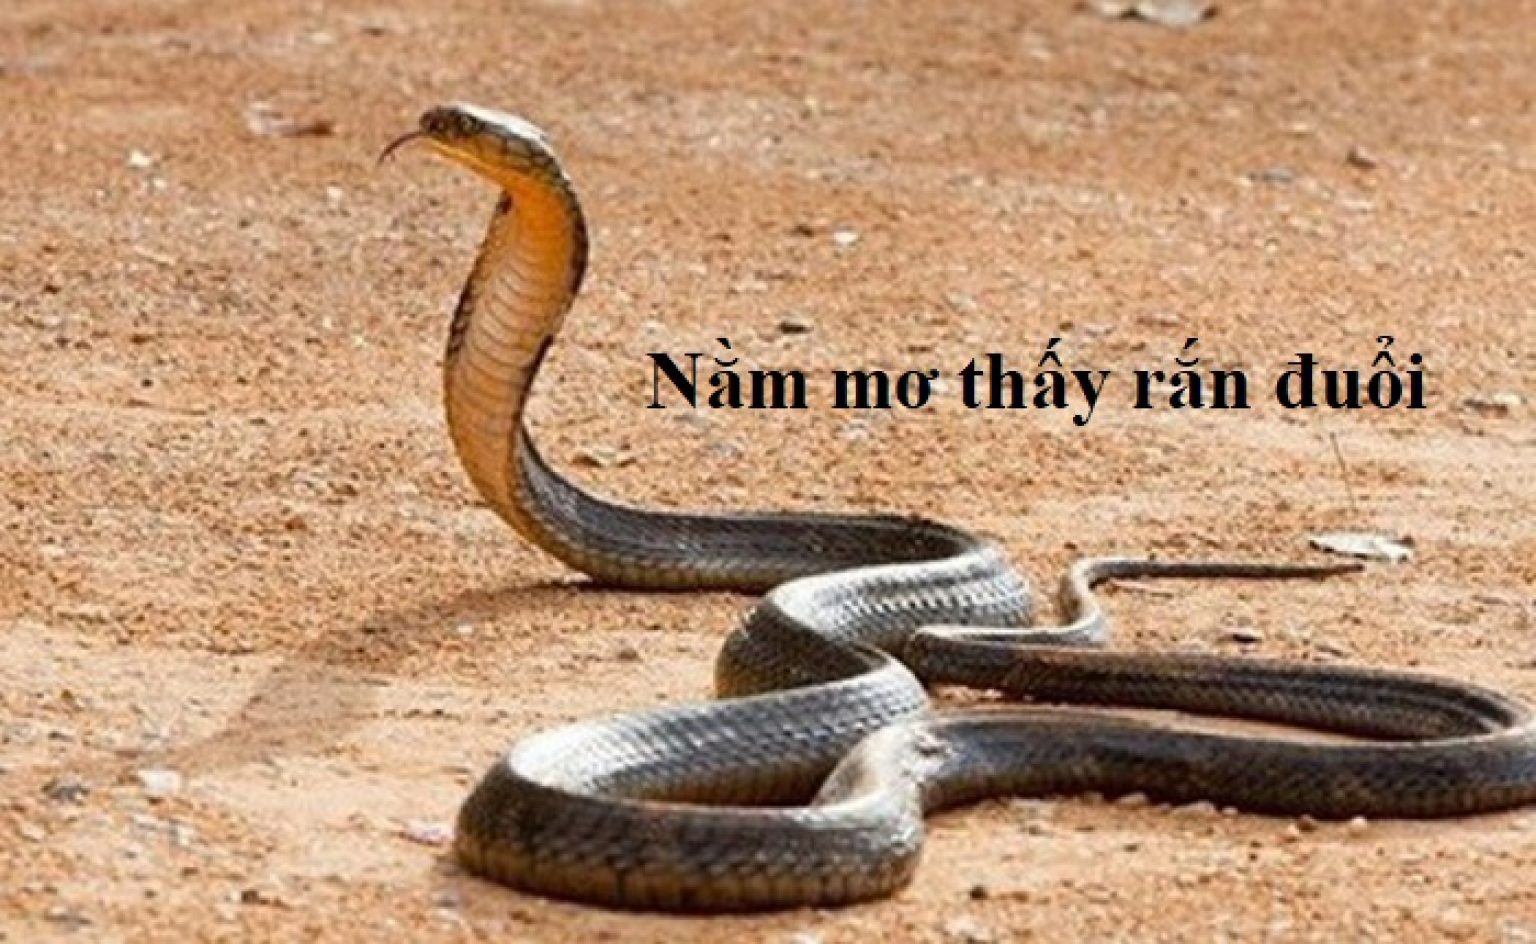 Snakes are longer